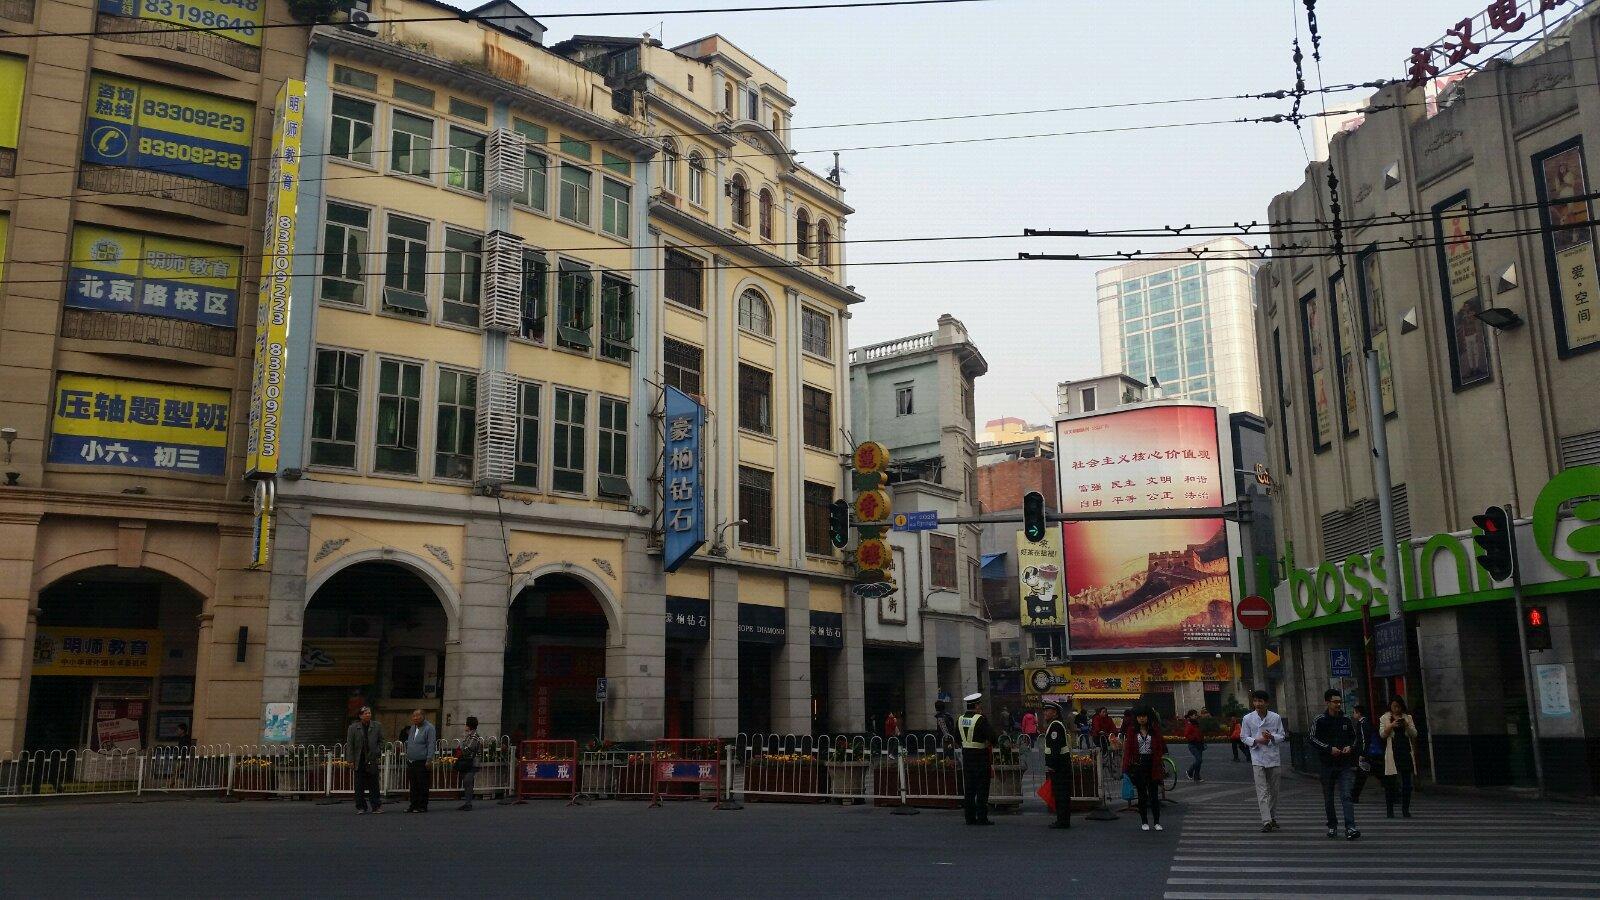 从这里开始进入北京路步行街. 北京路步行街